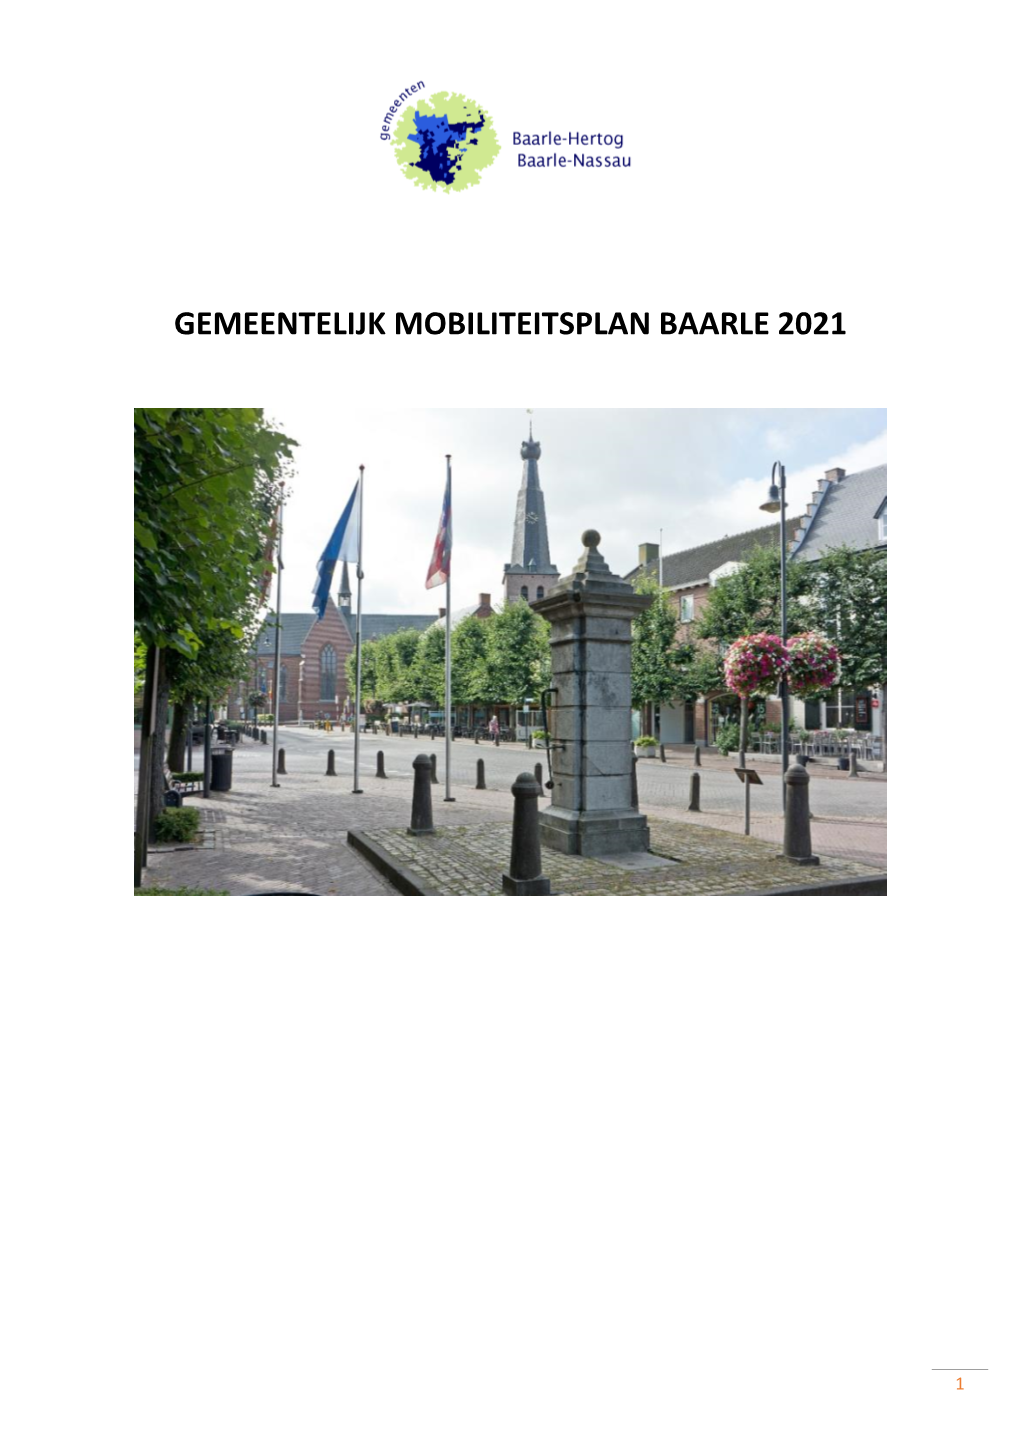 Gemeentelijk Mobiliteitsplan Baarle 2021